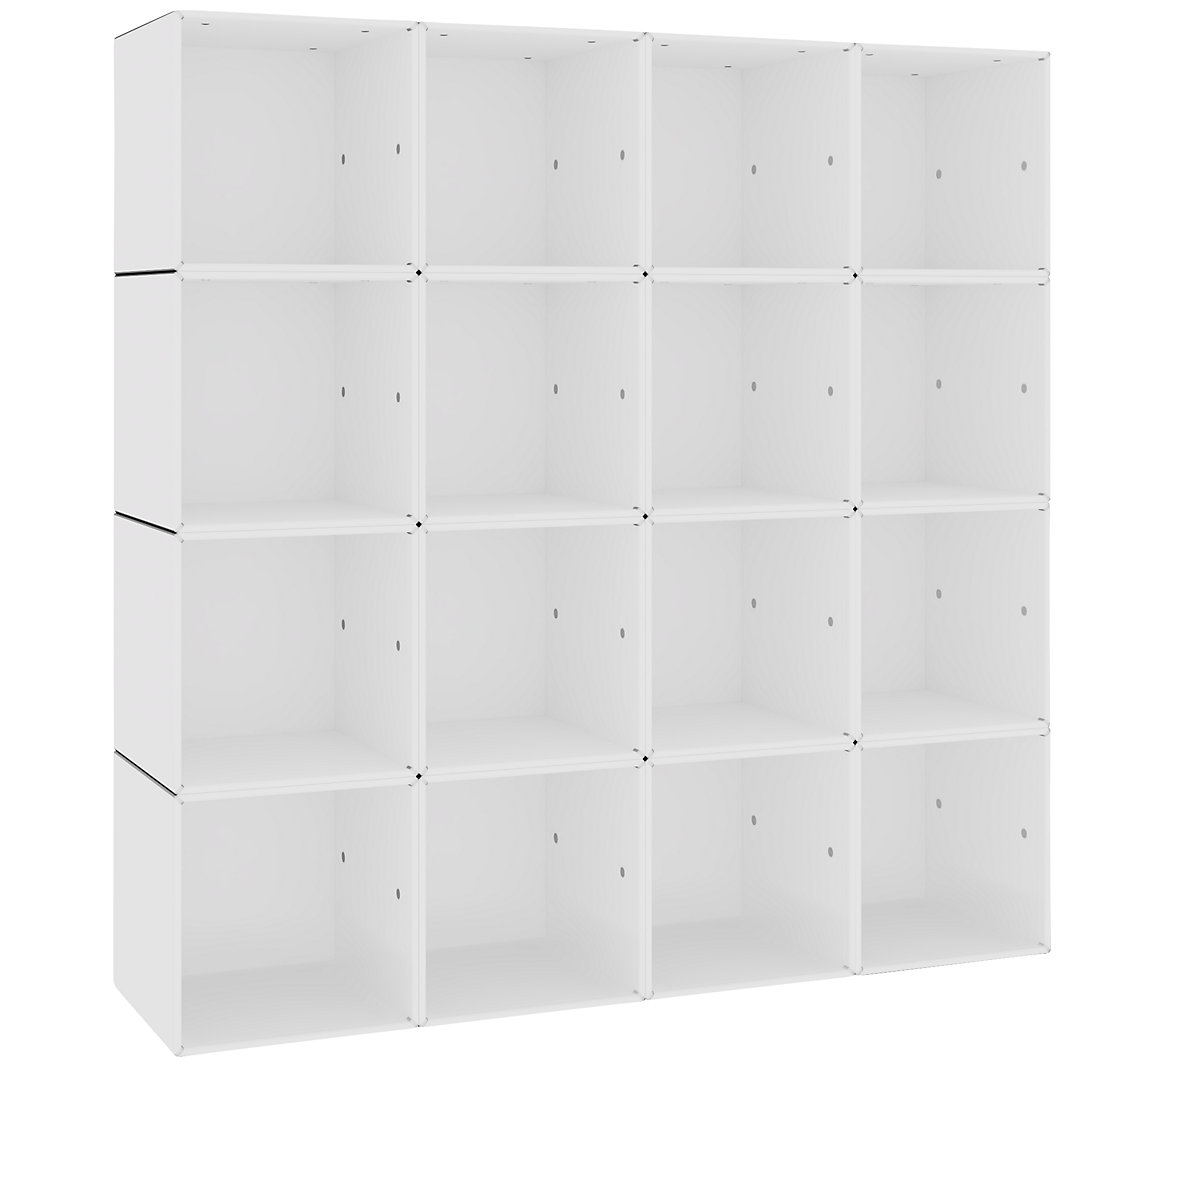 Wall shelf unit - mauser